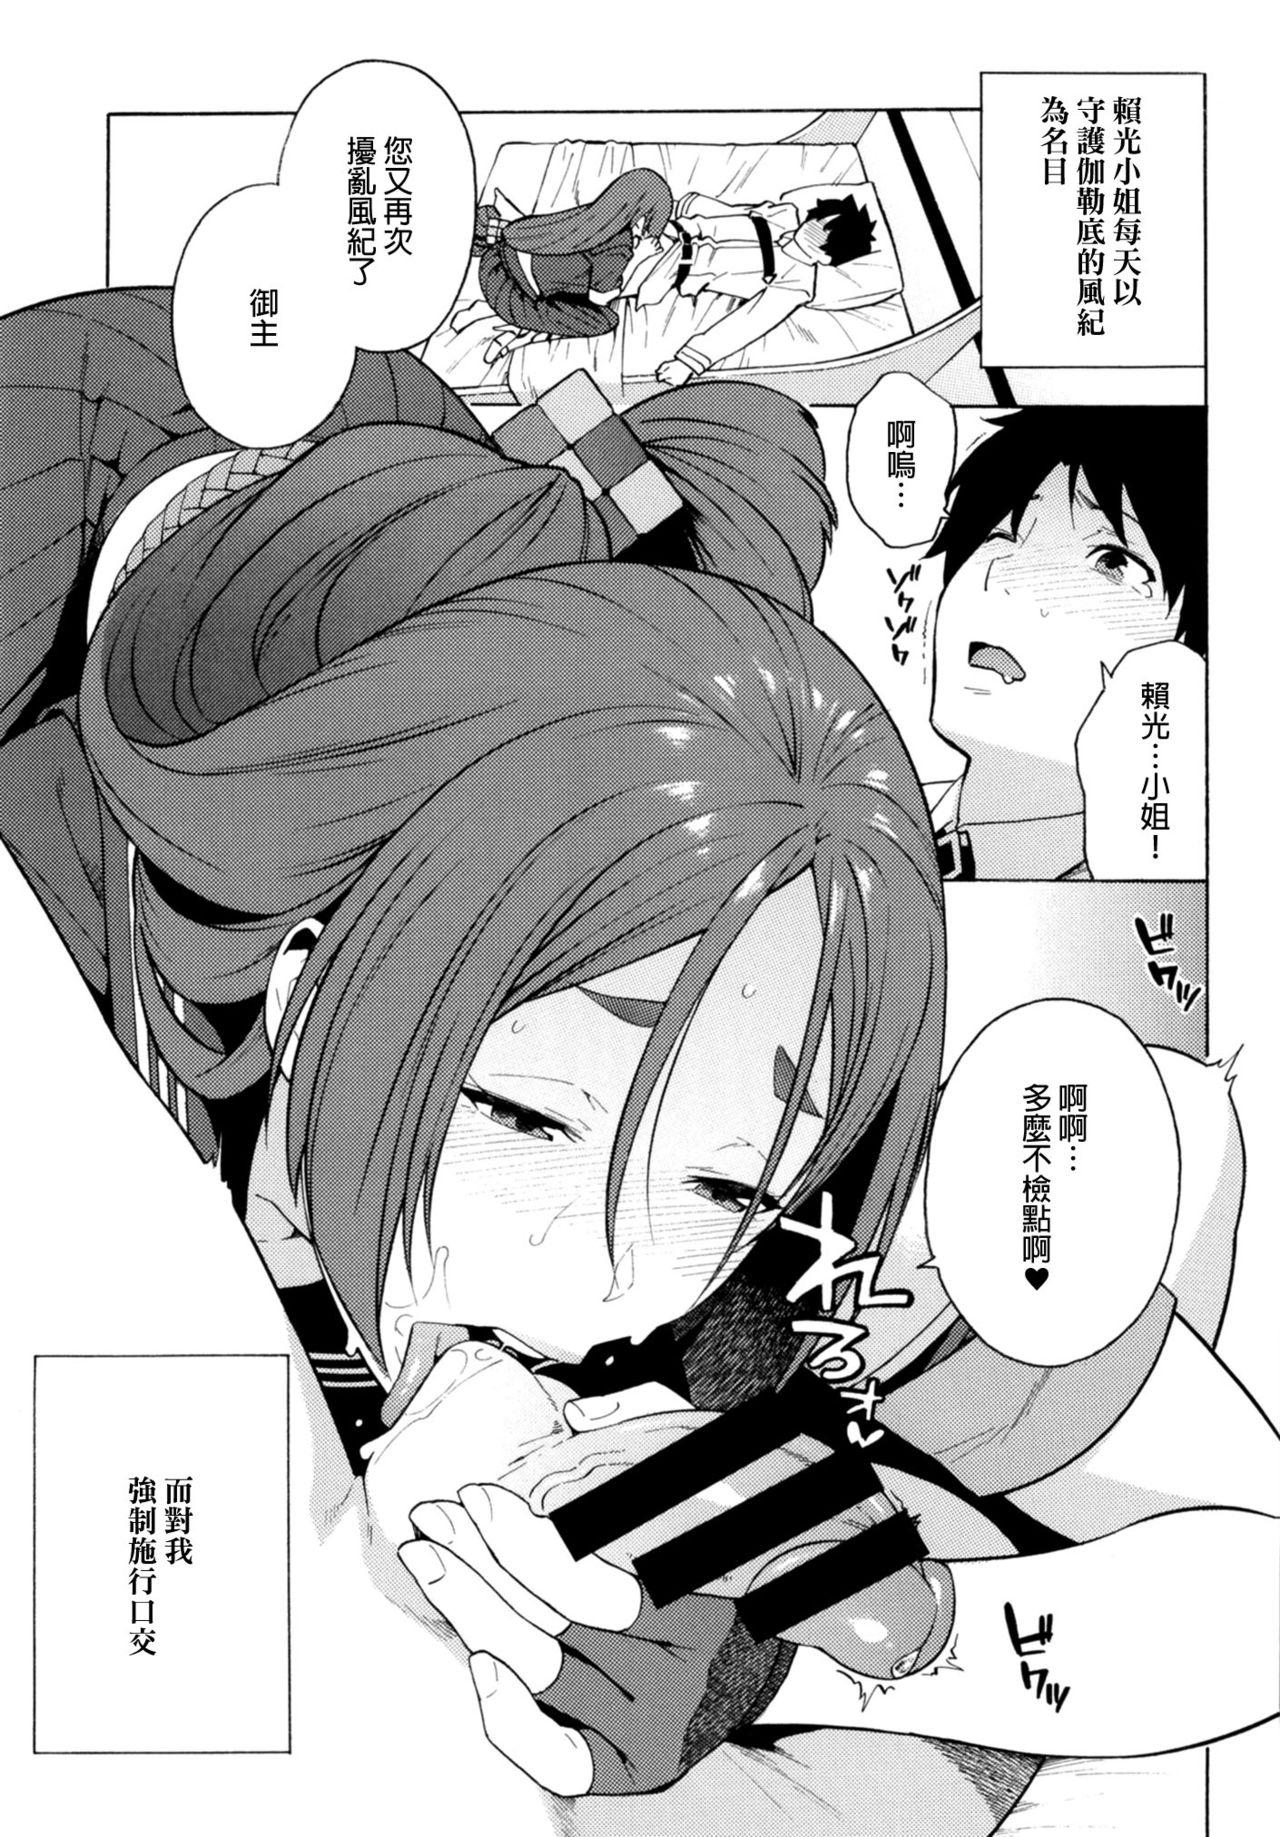 Blows Raikou ga Anata no Hajimete o Choudai Shimasu - Fate grand order Parties - Page 2